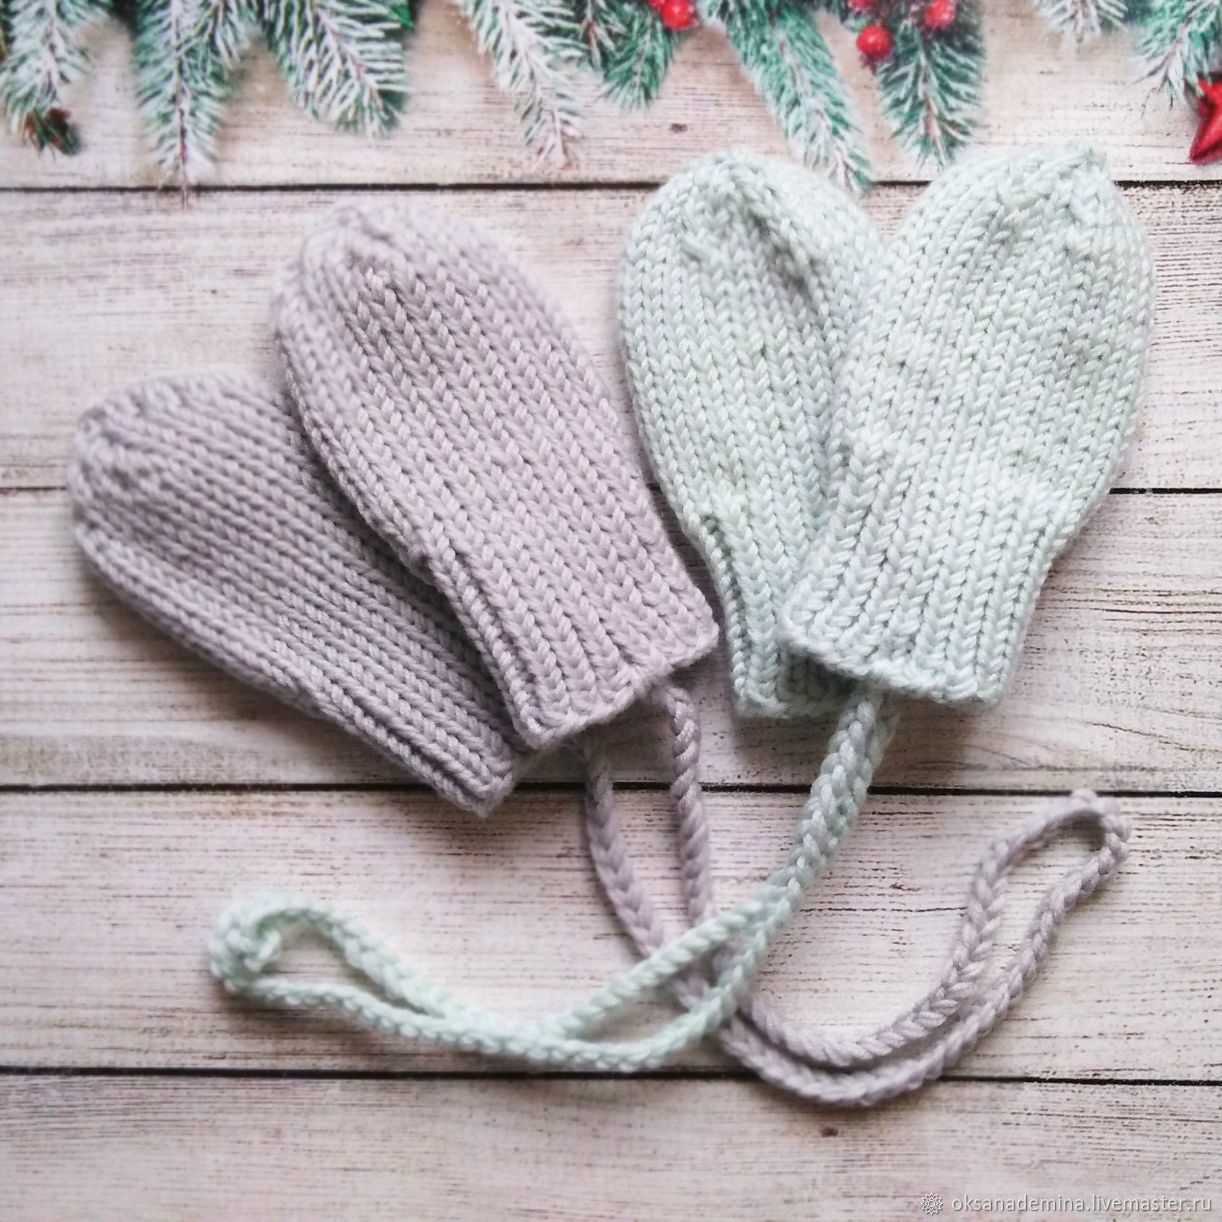 Детские перчатки и варежки для зимних активностей. Лучшие модели